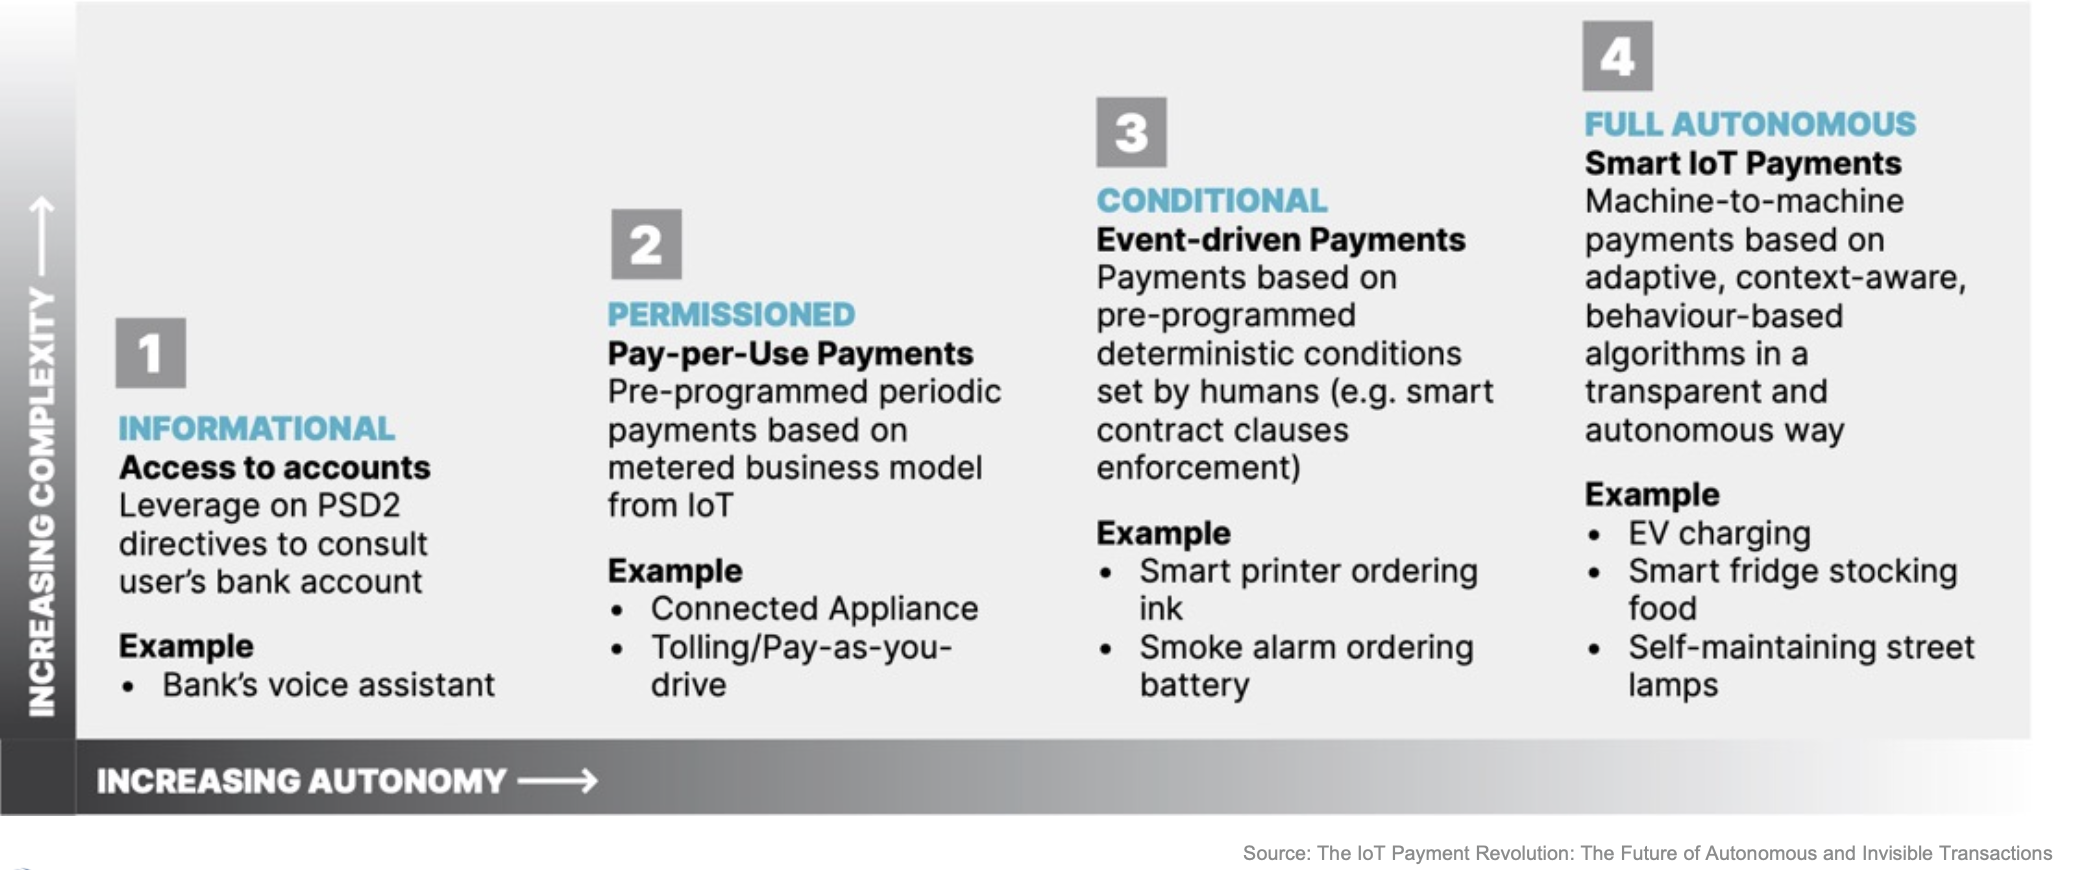 Levels of autonomous IoT payments